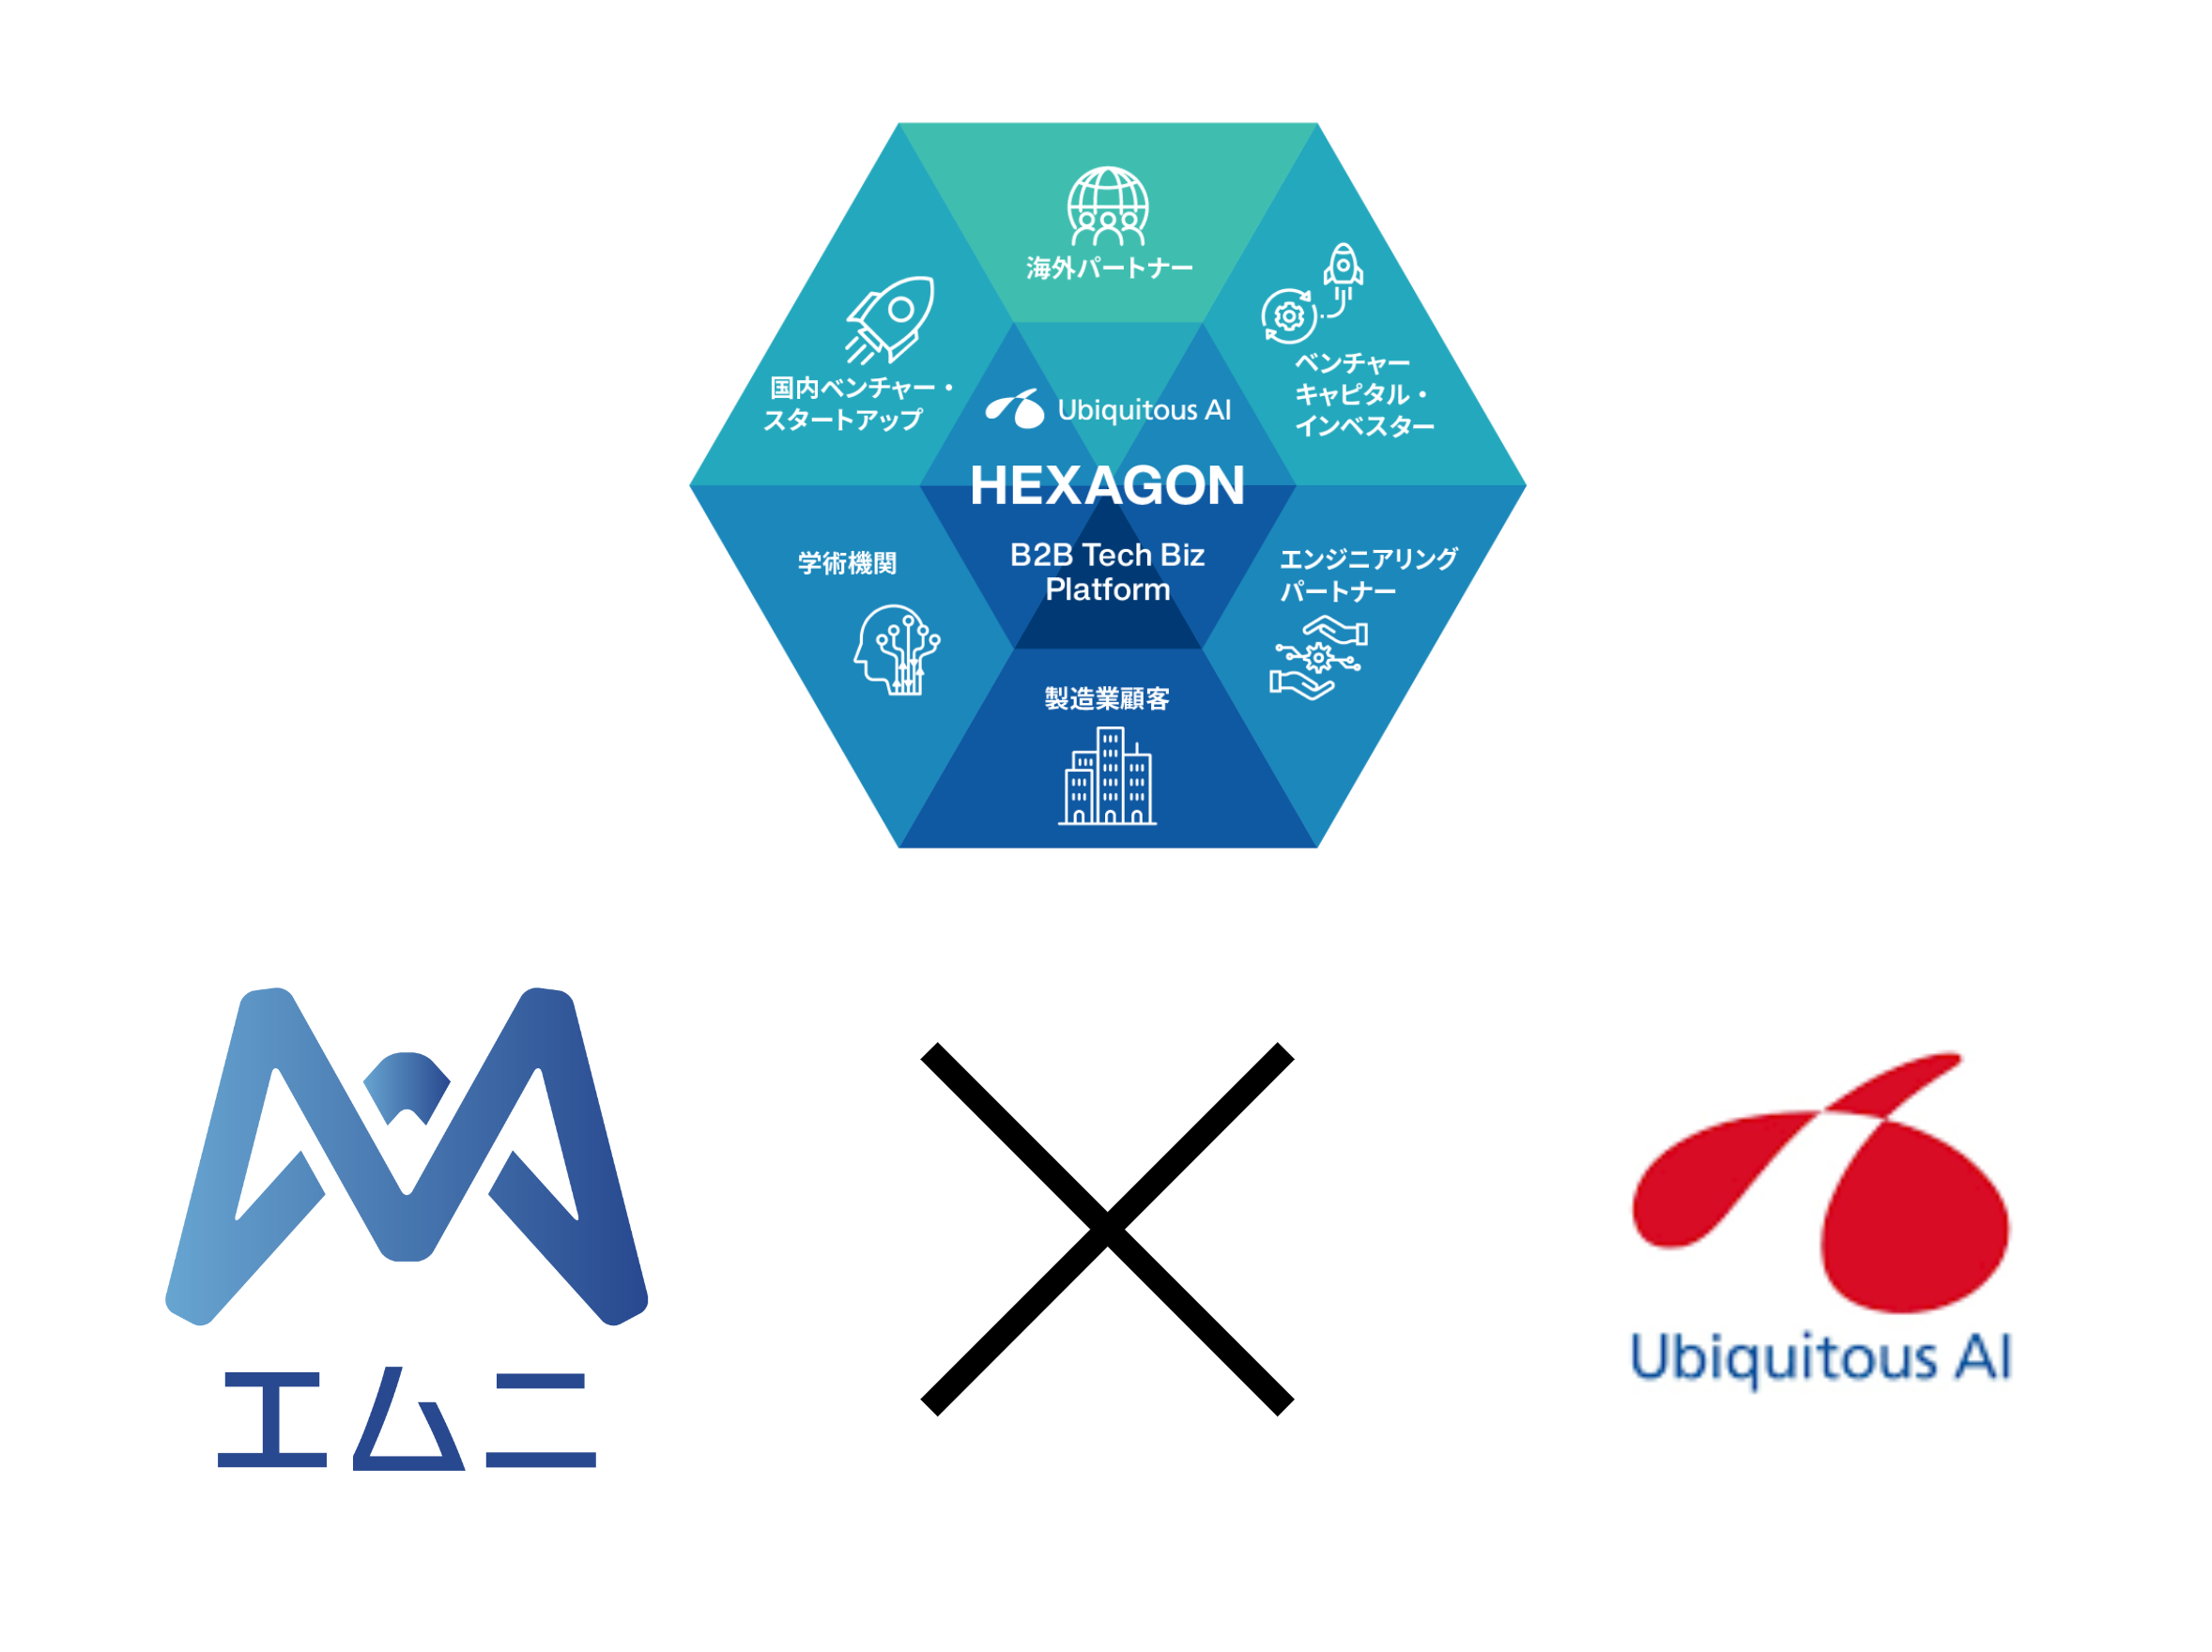 ユビキタスAIのB2B Tech Biz Platform『HEXAGON（ヘキサゴン）』に加入